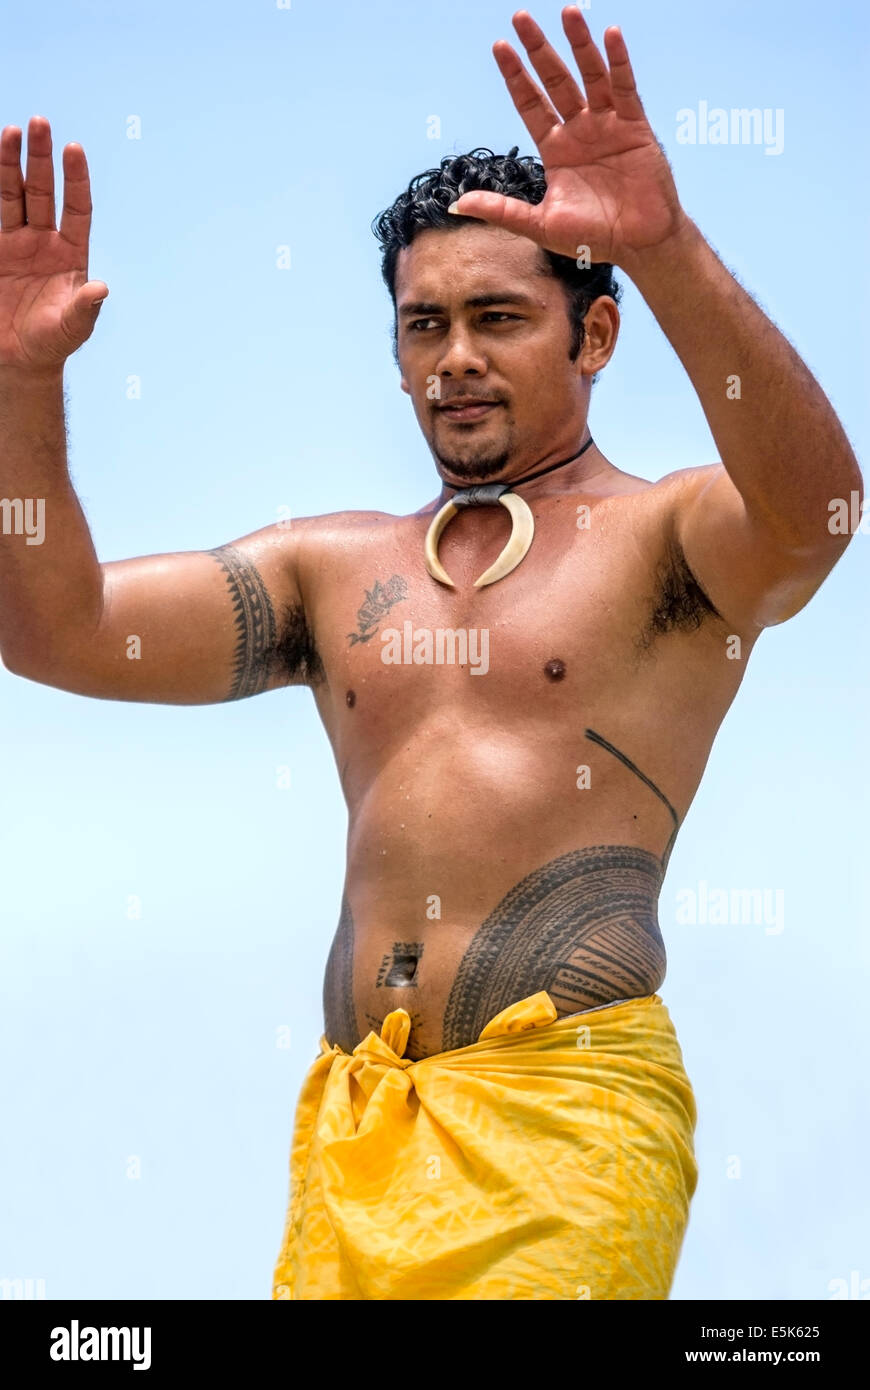 Polynesische Tänzer in Tracht während einer Performance in Apia, Samoa-Inseln. Stockfoto